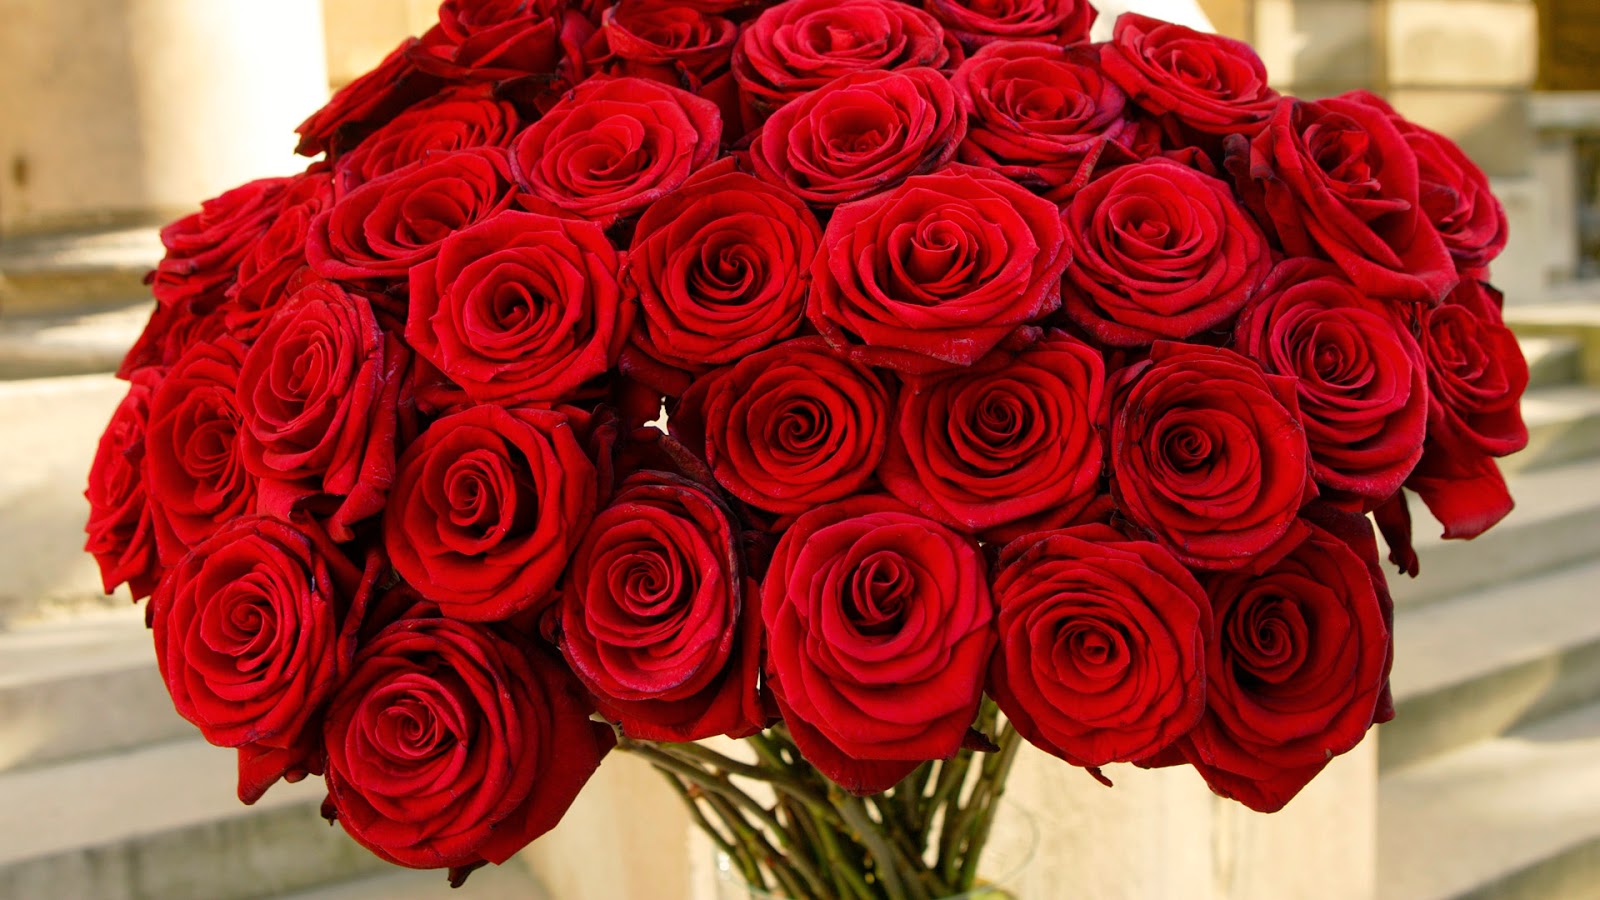 Hoa hồng Ecuador bày tỏ yêu thương ngọt ngào và trìu mến